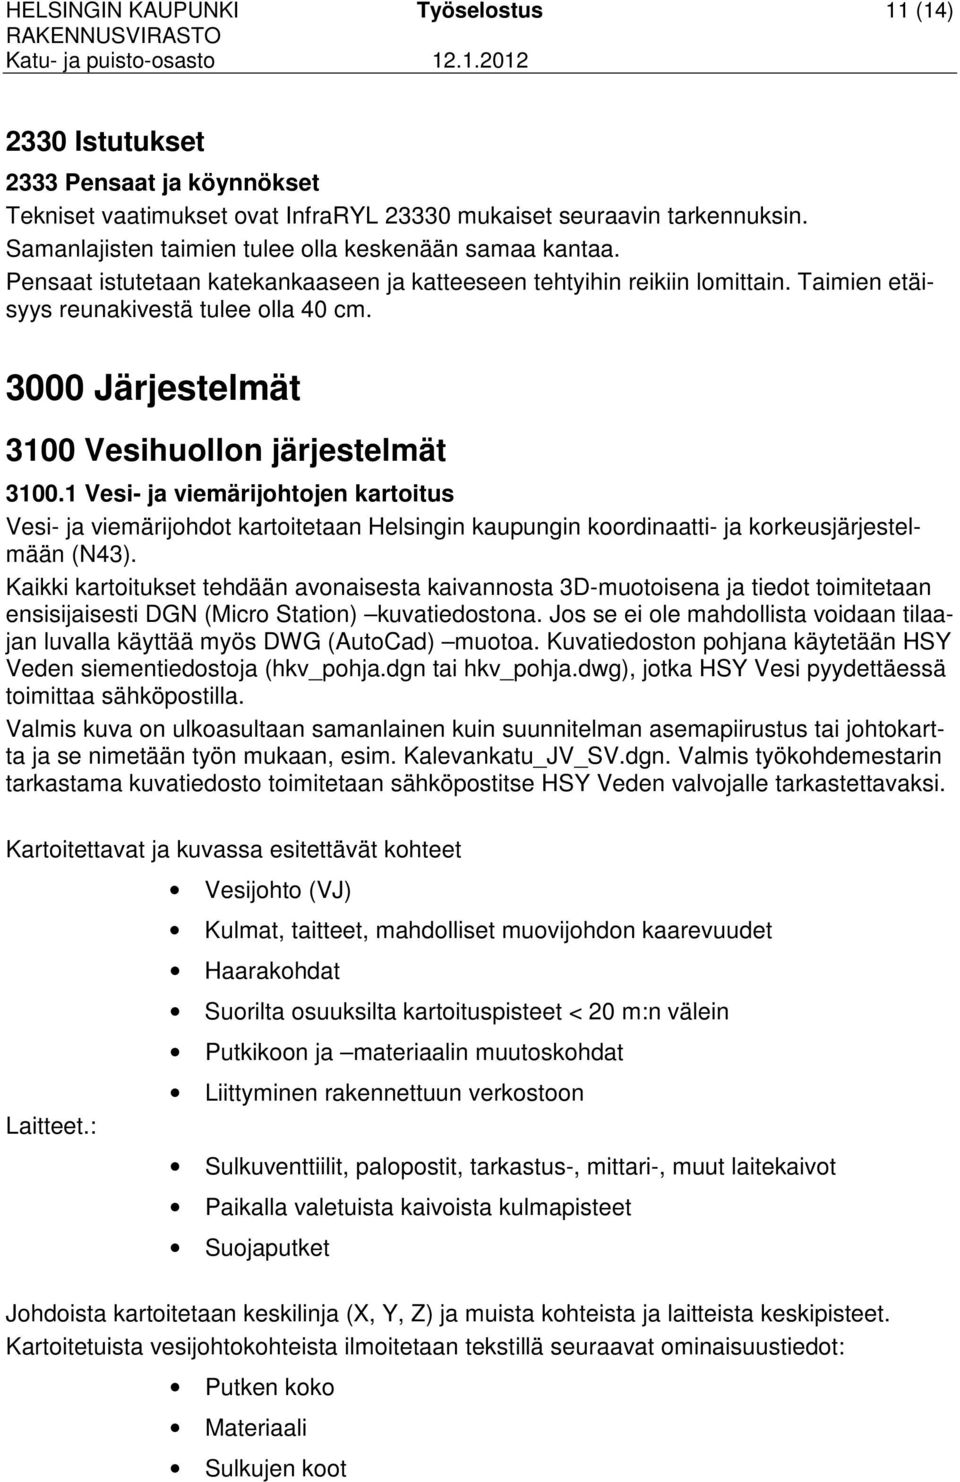 3000 Järjestelmät 3100 Vesihuollon järjestelmät 3100.1 Vesi- ja viemärijohtojen kartoitus Vesi- ja viemärijohdot kartoitetaan Helsingin kaupungin koordinaatti- ja korkeusjärjestelmään (N43).